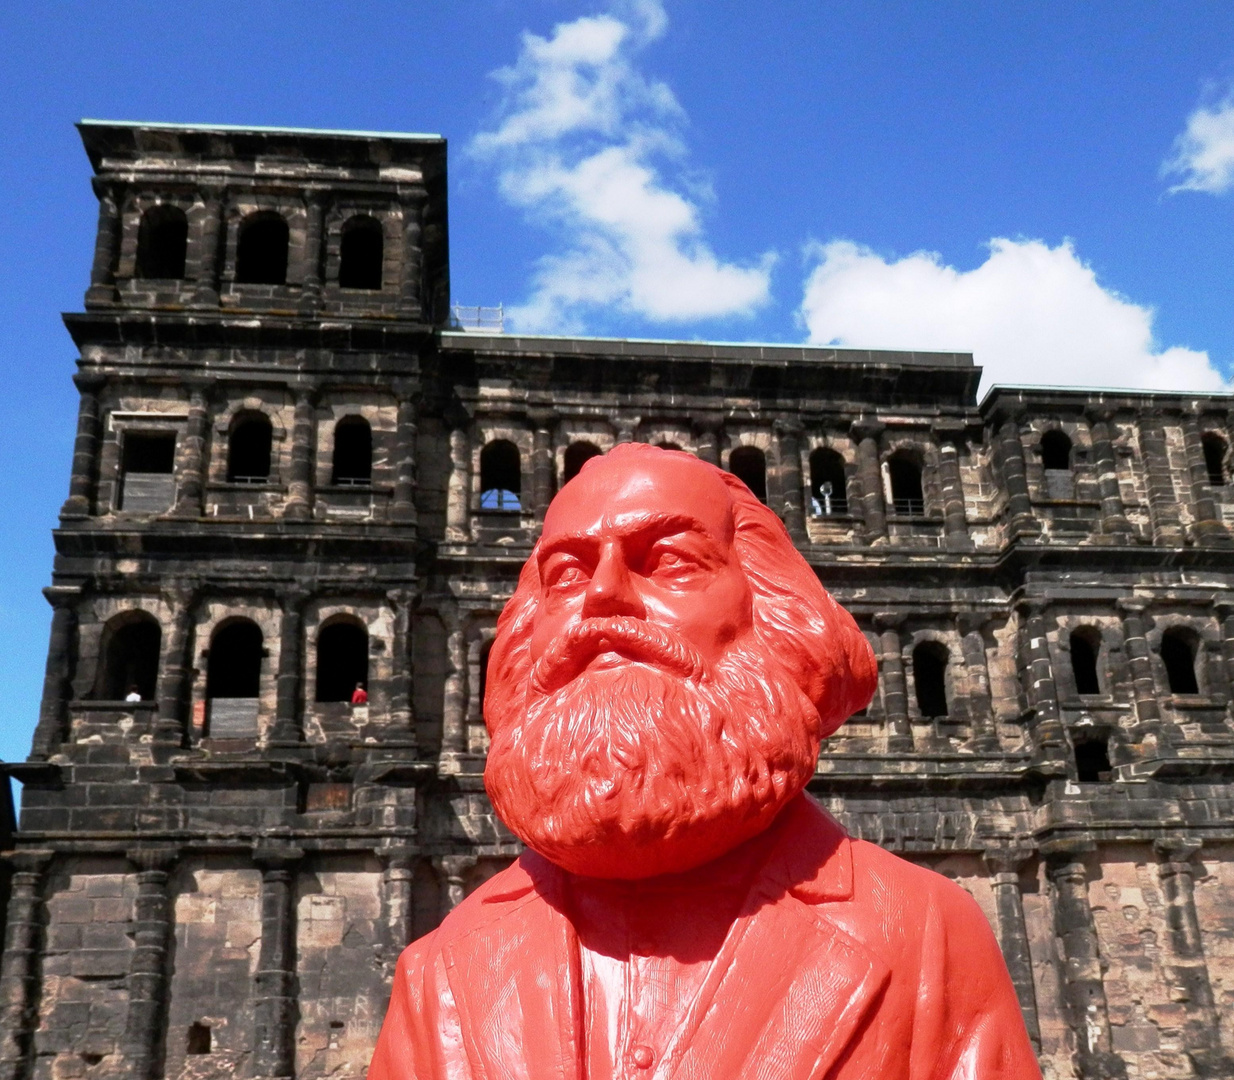 Karl Marx meets Porta Nigra